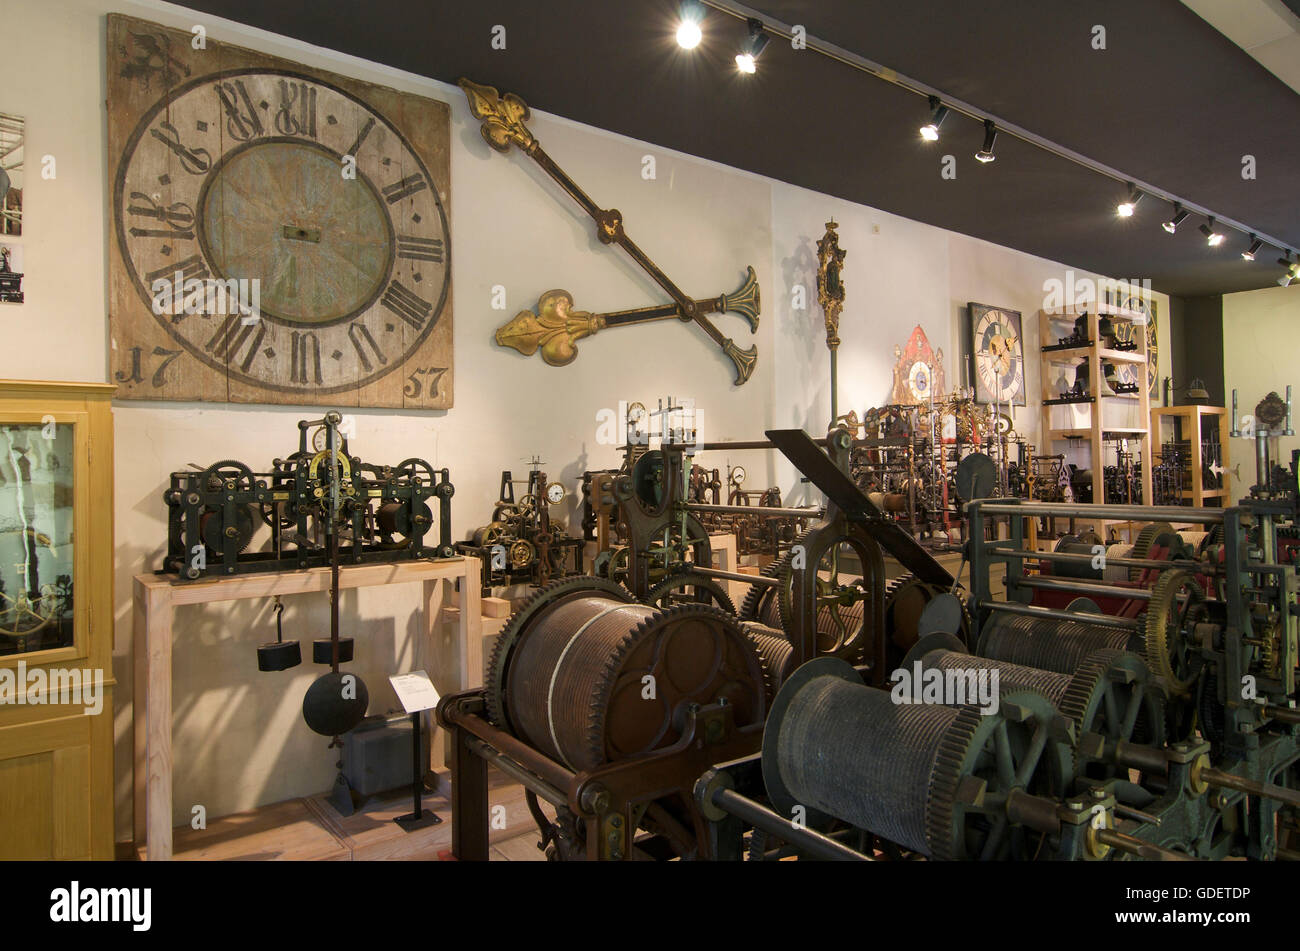 Astronomische Uhr im Turmuhrenmuseum in Mindelheim, Allgäu, Bayern,  Deutschland Stockfotografie - Alamy